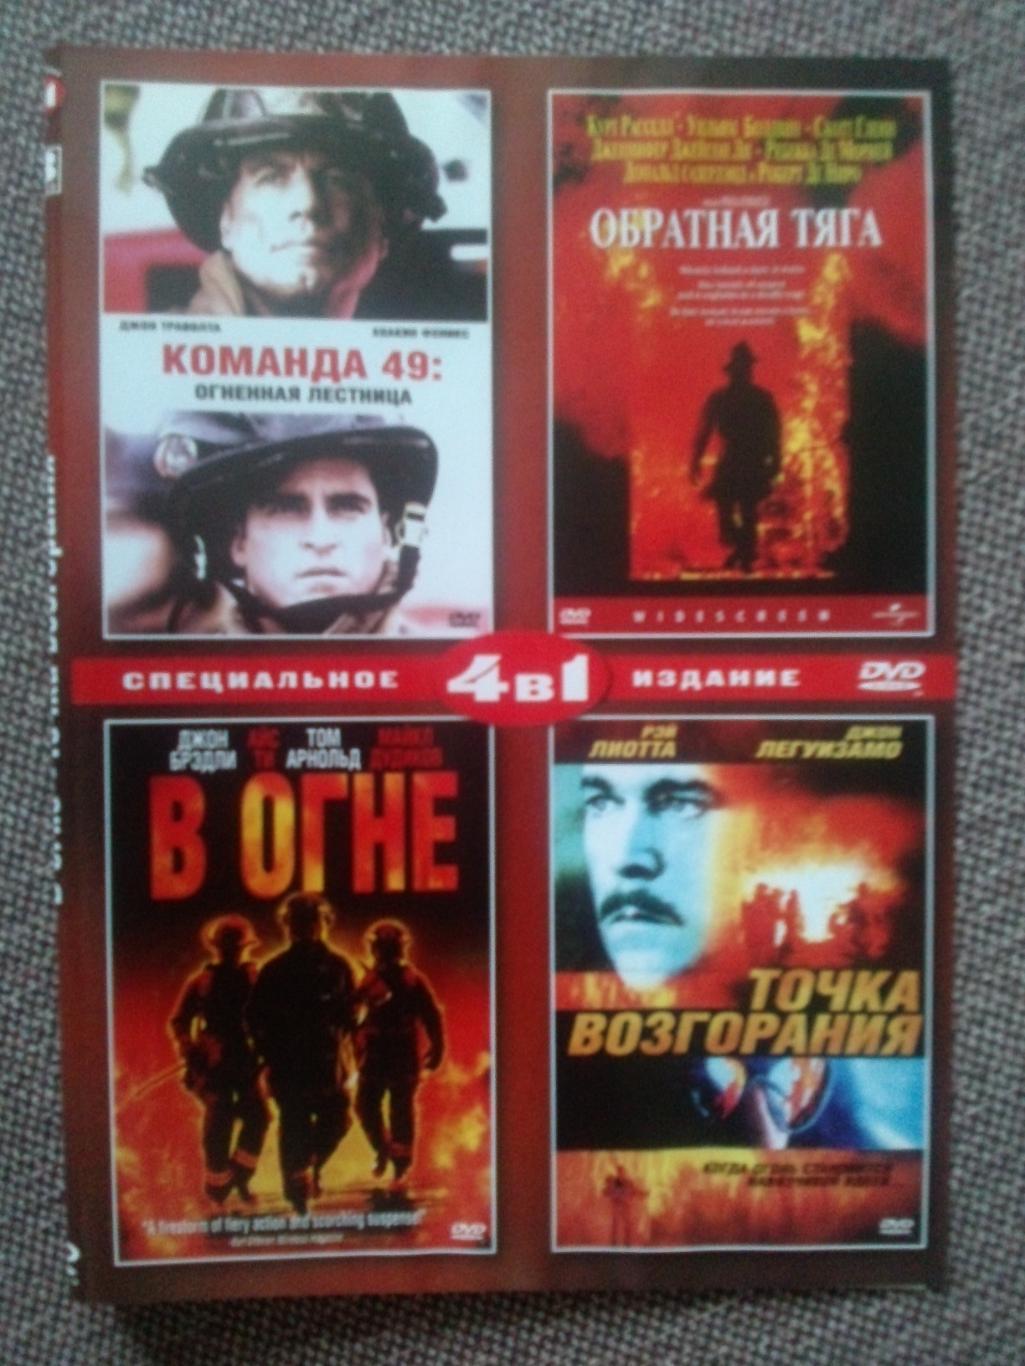 DVD диск : 4 фильма о пожарных (В огне, Обратная тяга,Точка возгорания,Команда49